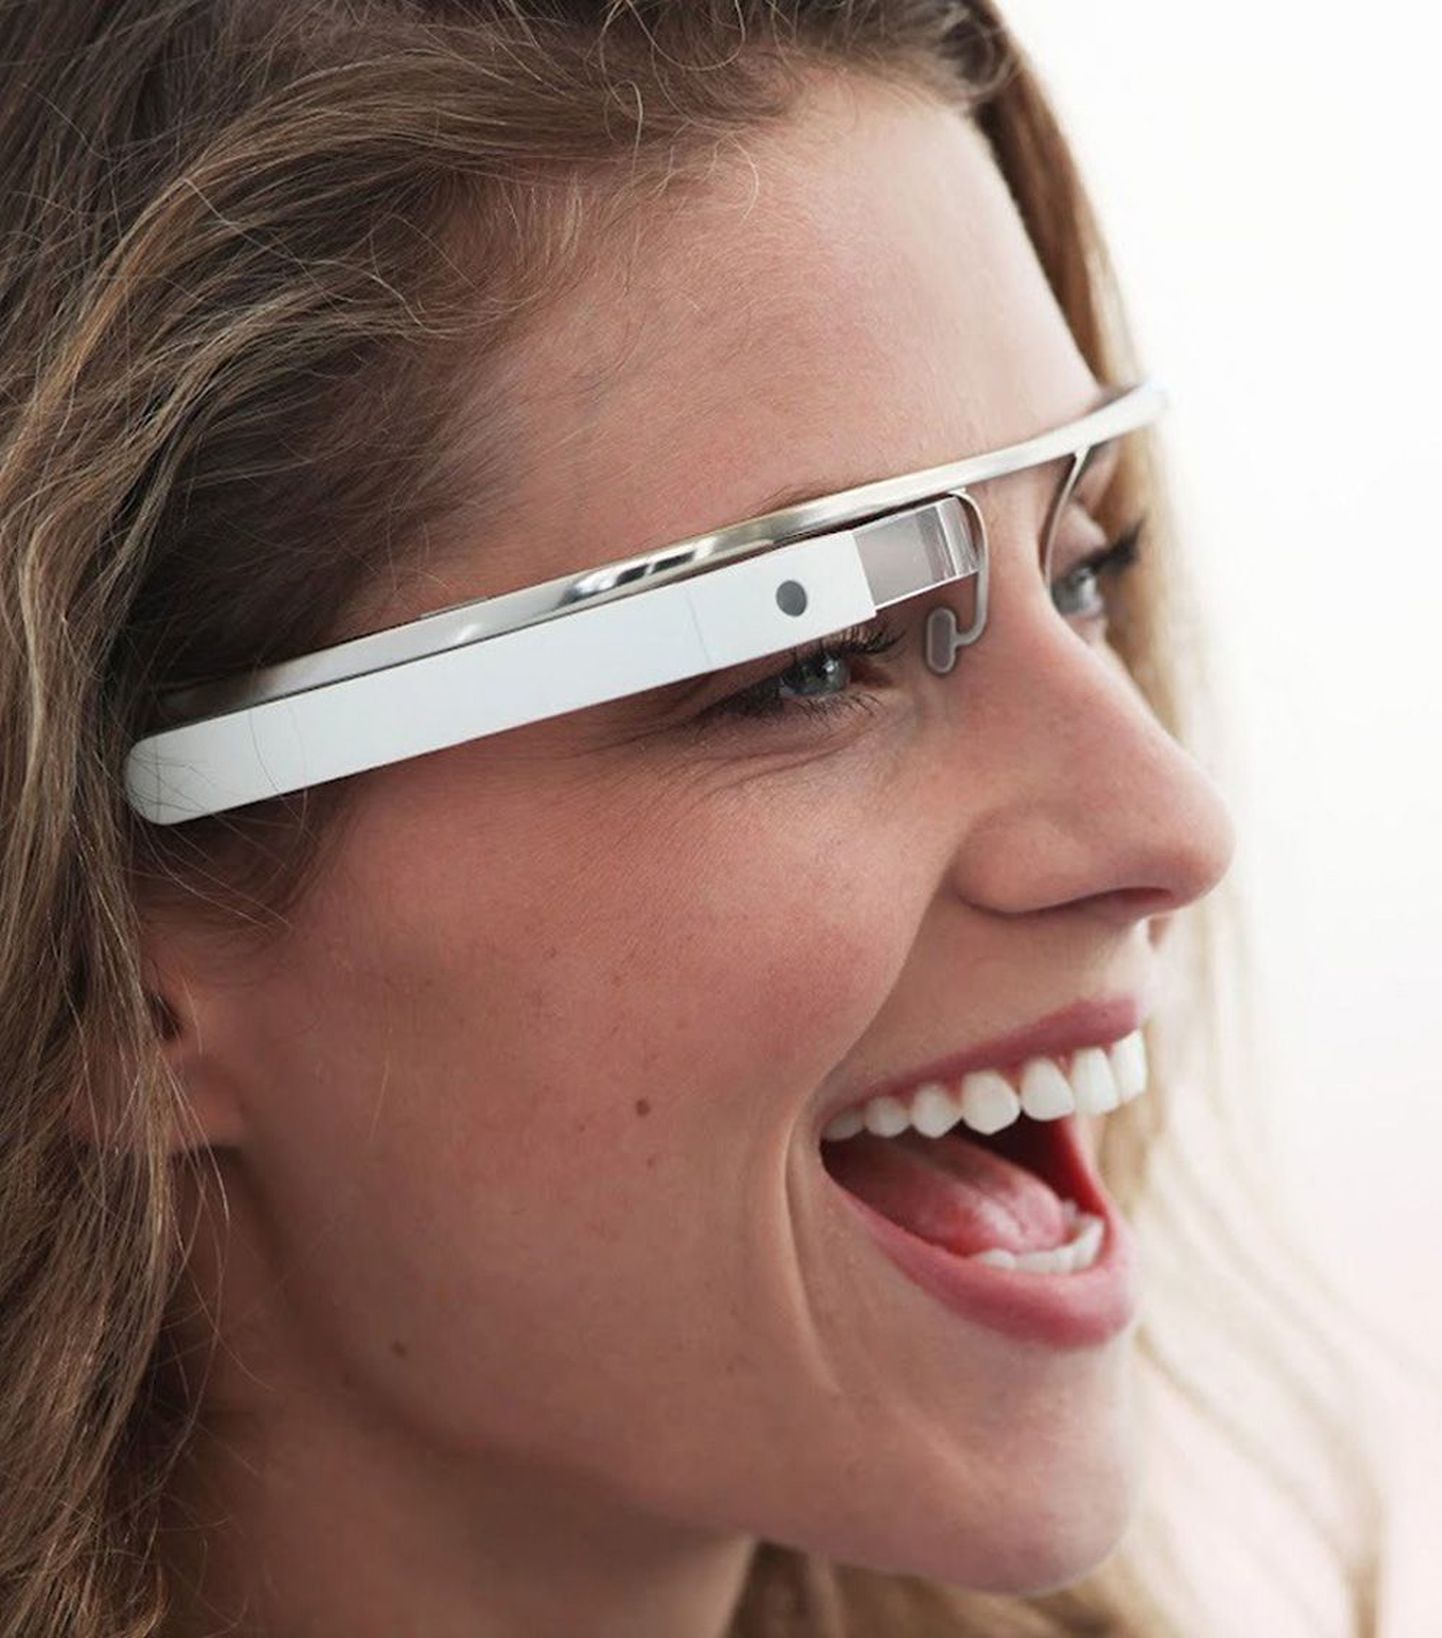 Google töötab välja nn intelligentsete prillide prototüüpi, mille läbipaistvale ekraanile kuvatakse erinevat infot. Kasutajad saavad seadet juhtida häälkäskude ja pealiigutustega.